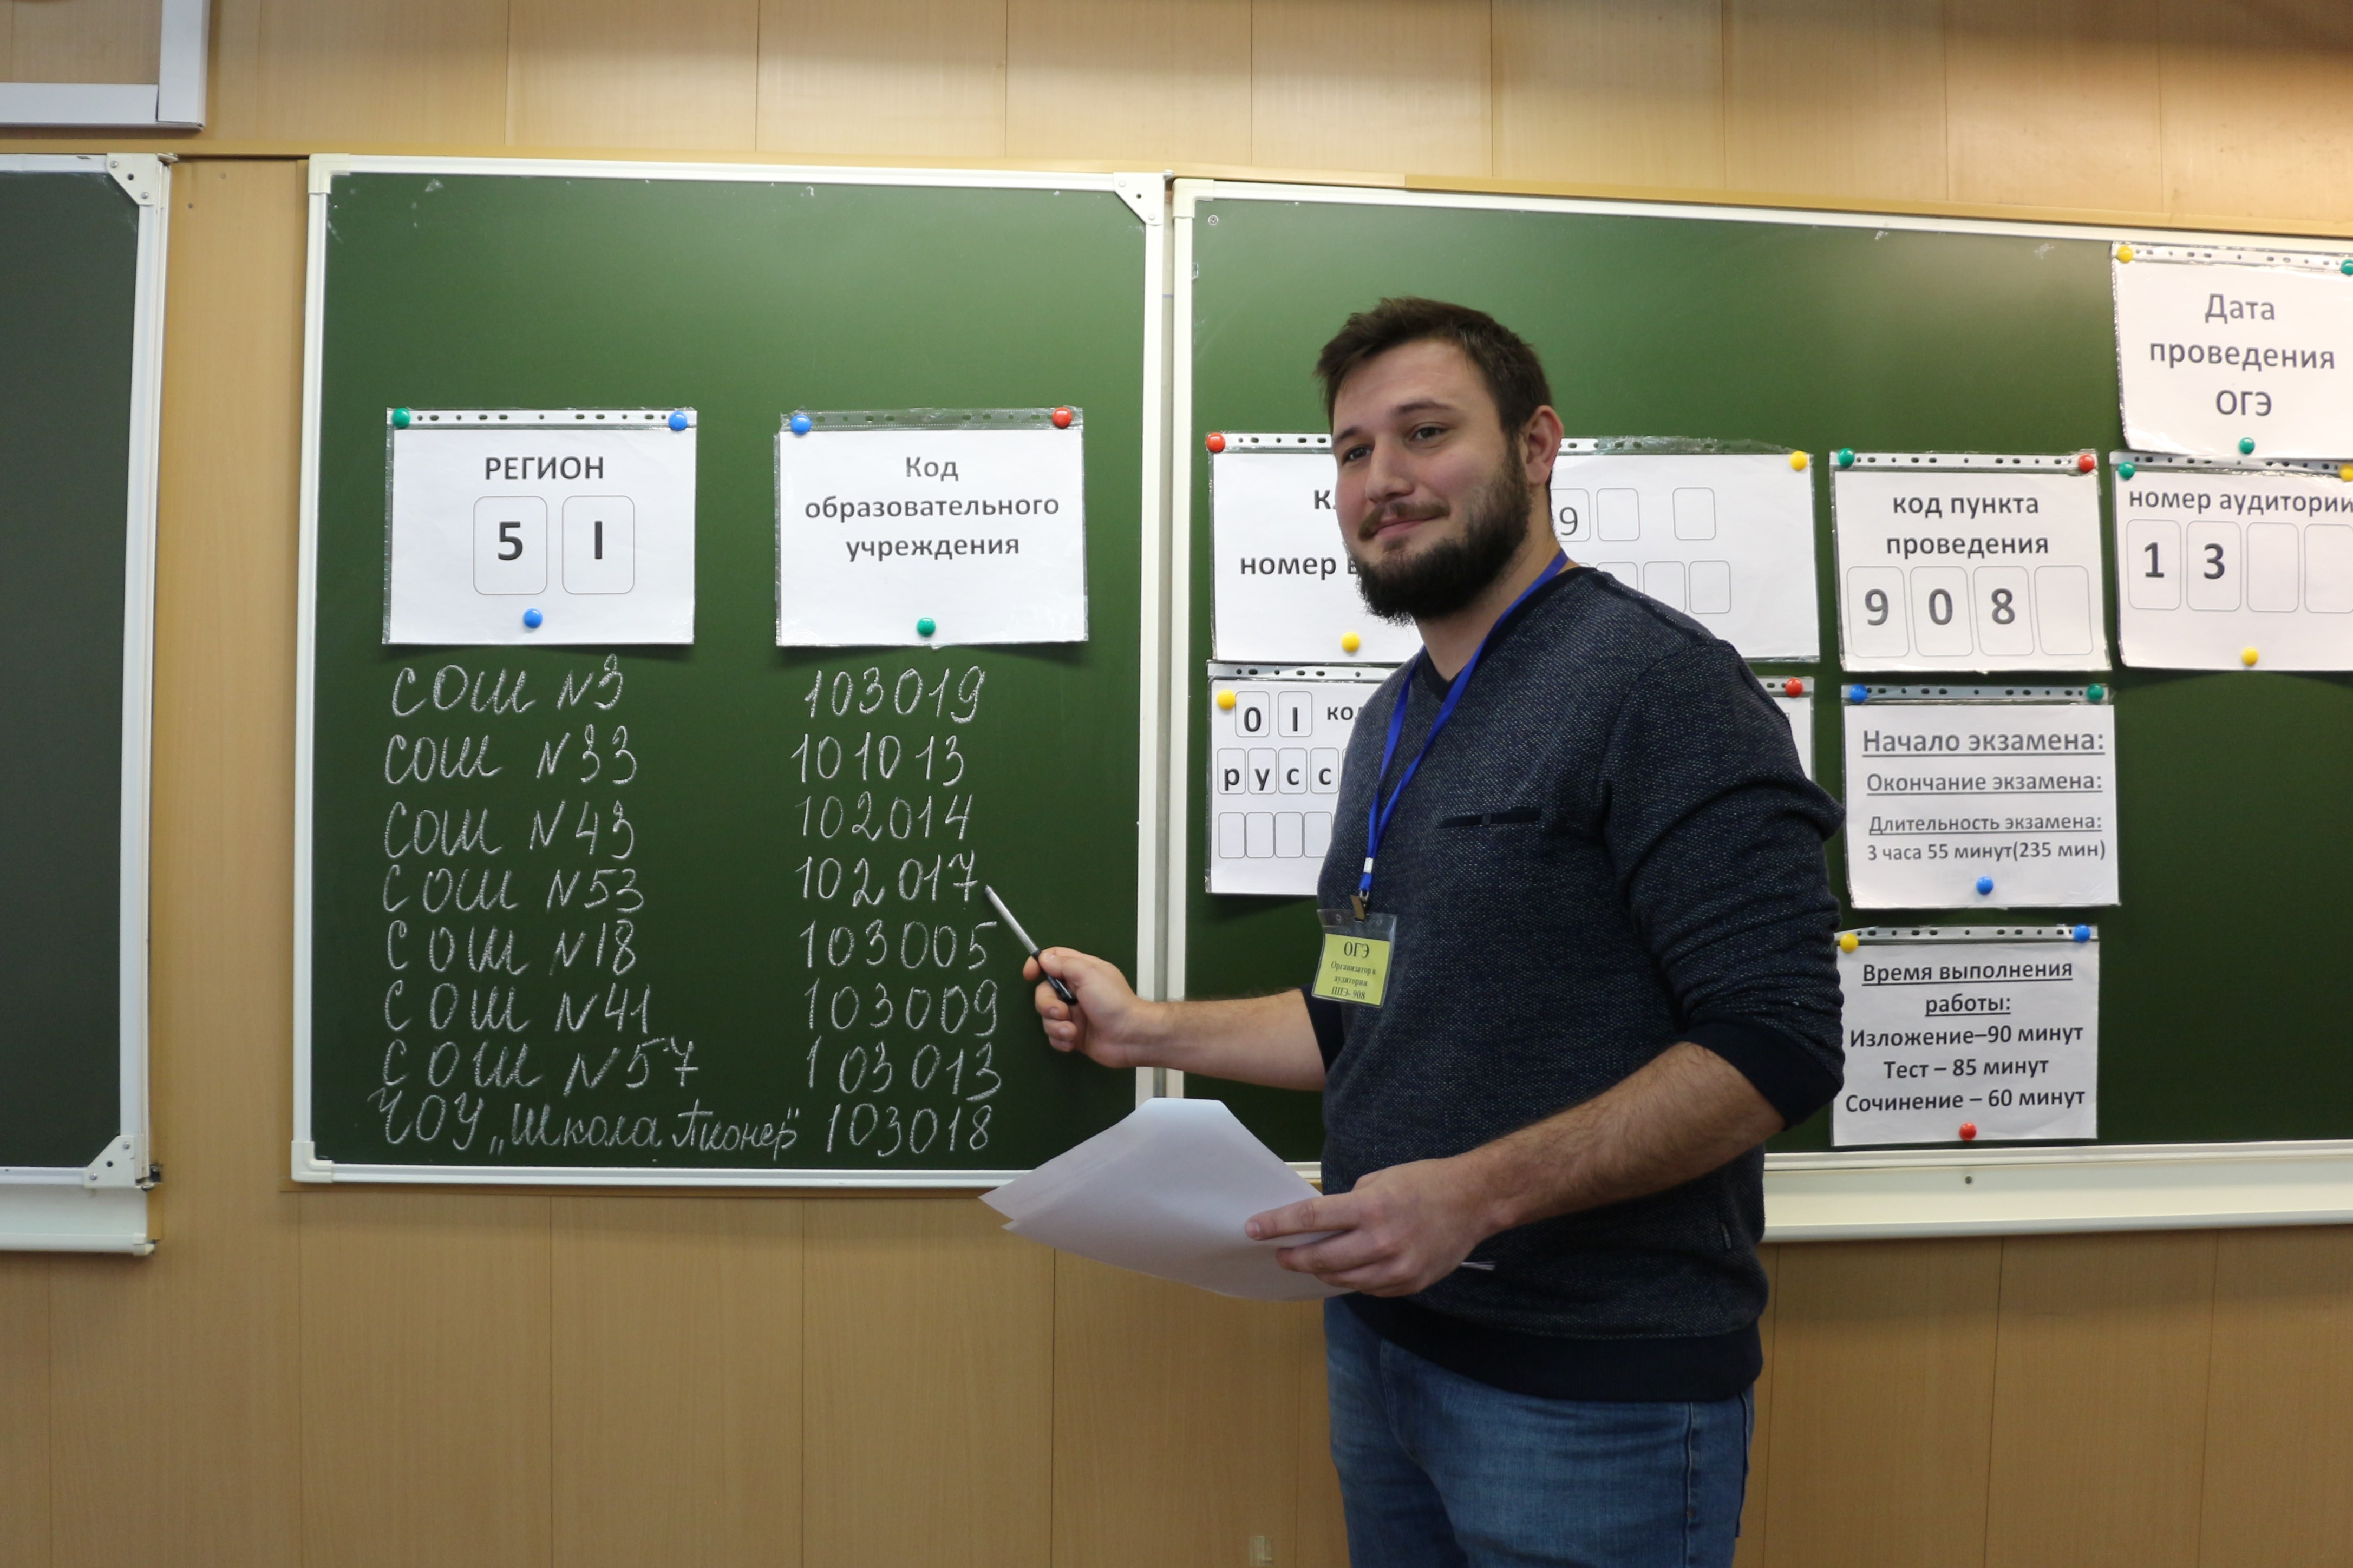 Участники дополнительного периода ОГЭ написали экзамен по русскому языку